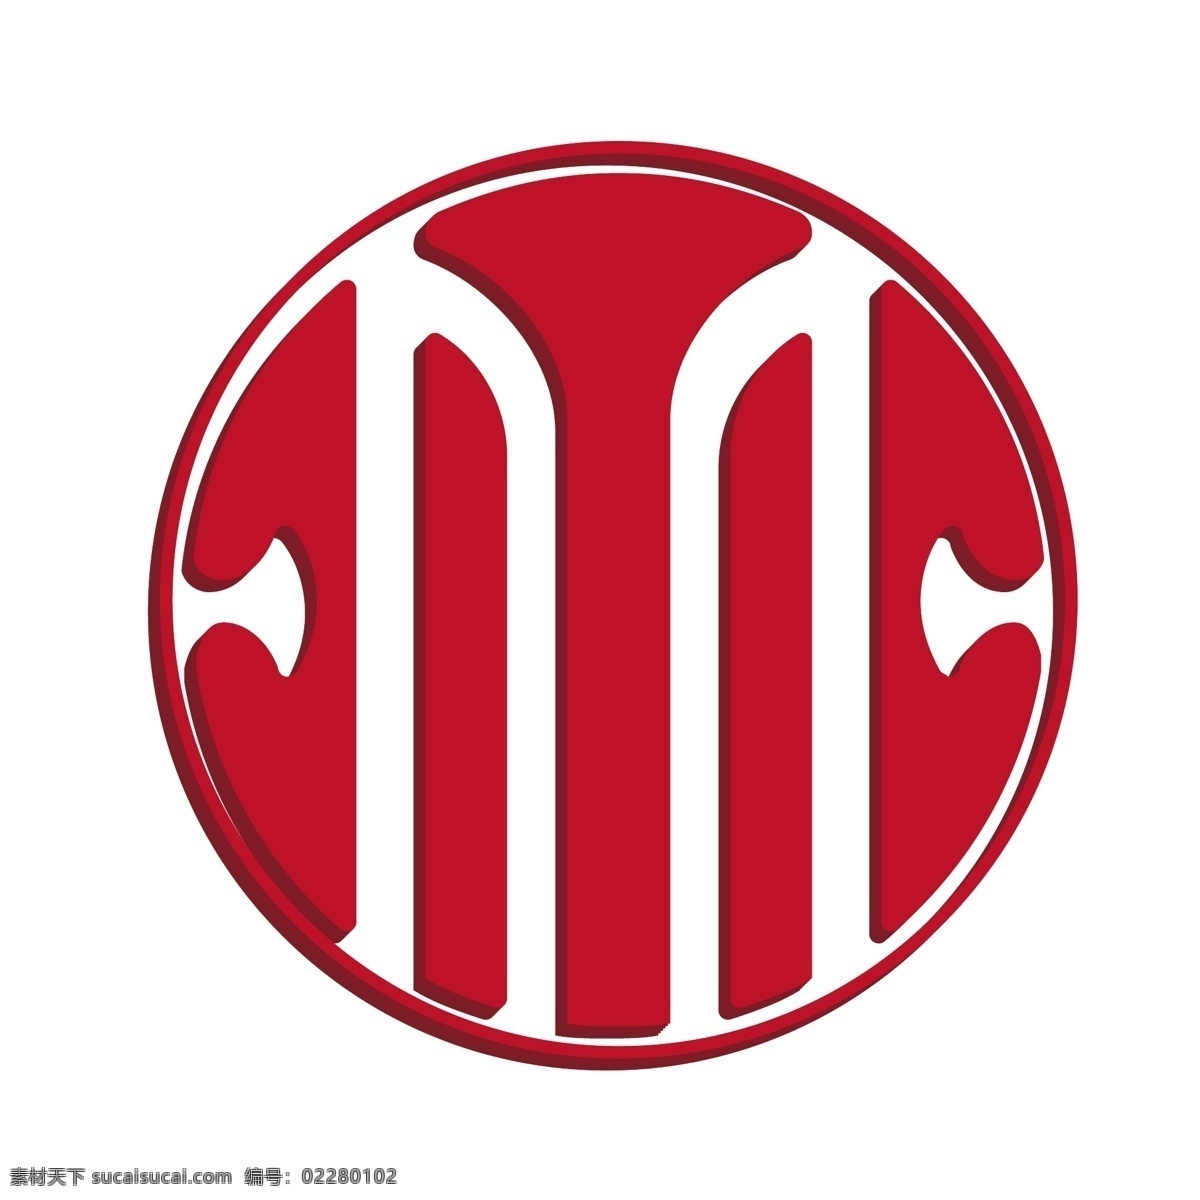 红色 中信银行 logo 图标 2.5d 立体 logo图标 贷款机构 货币信贷 矢量银行 金融机构 手机app 免抠图png 千库原创